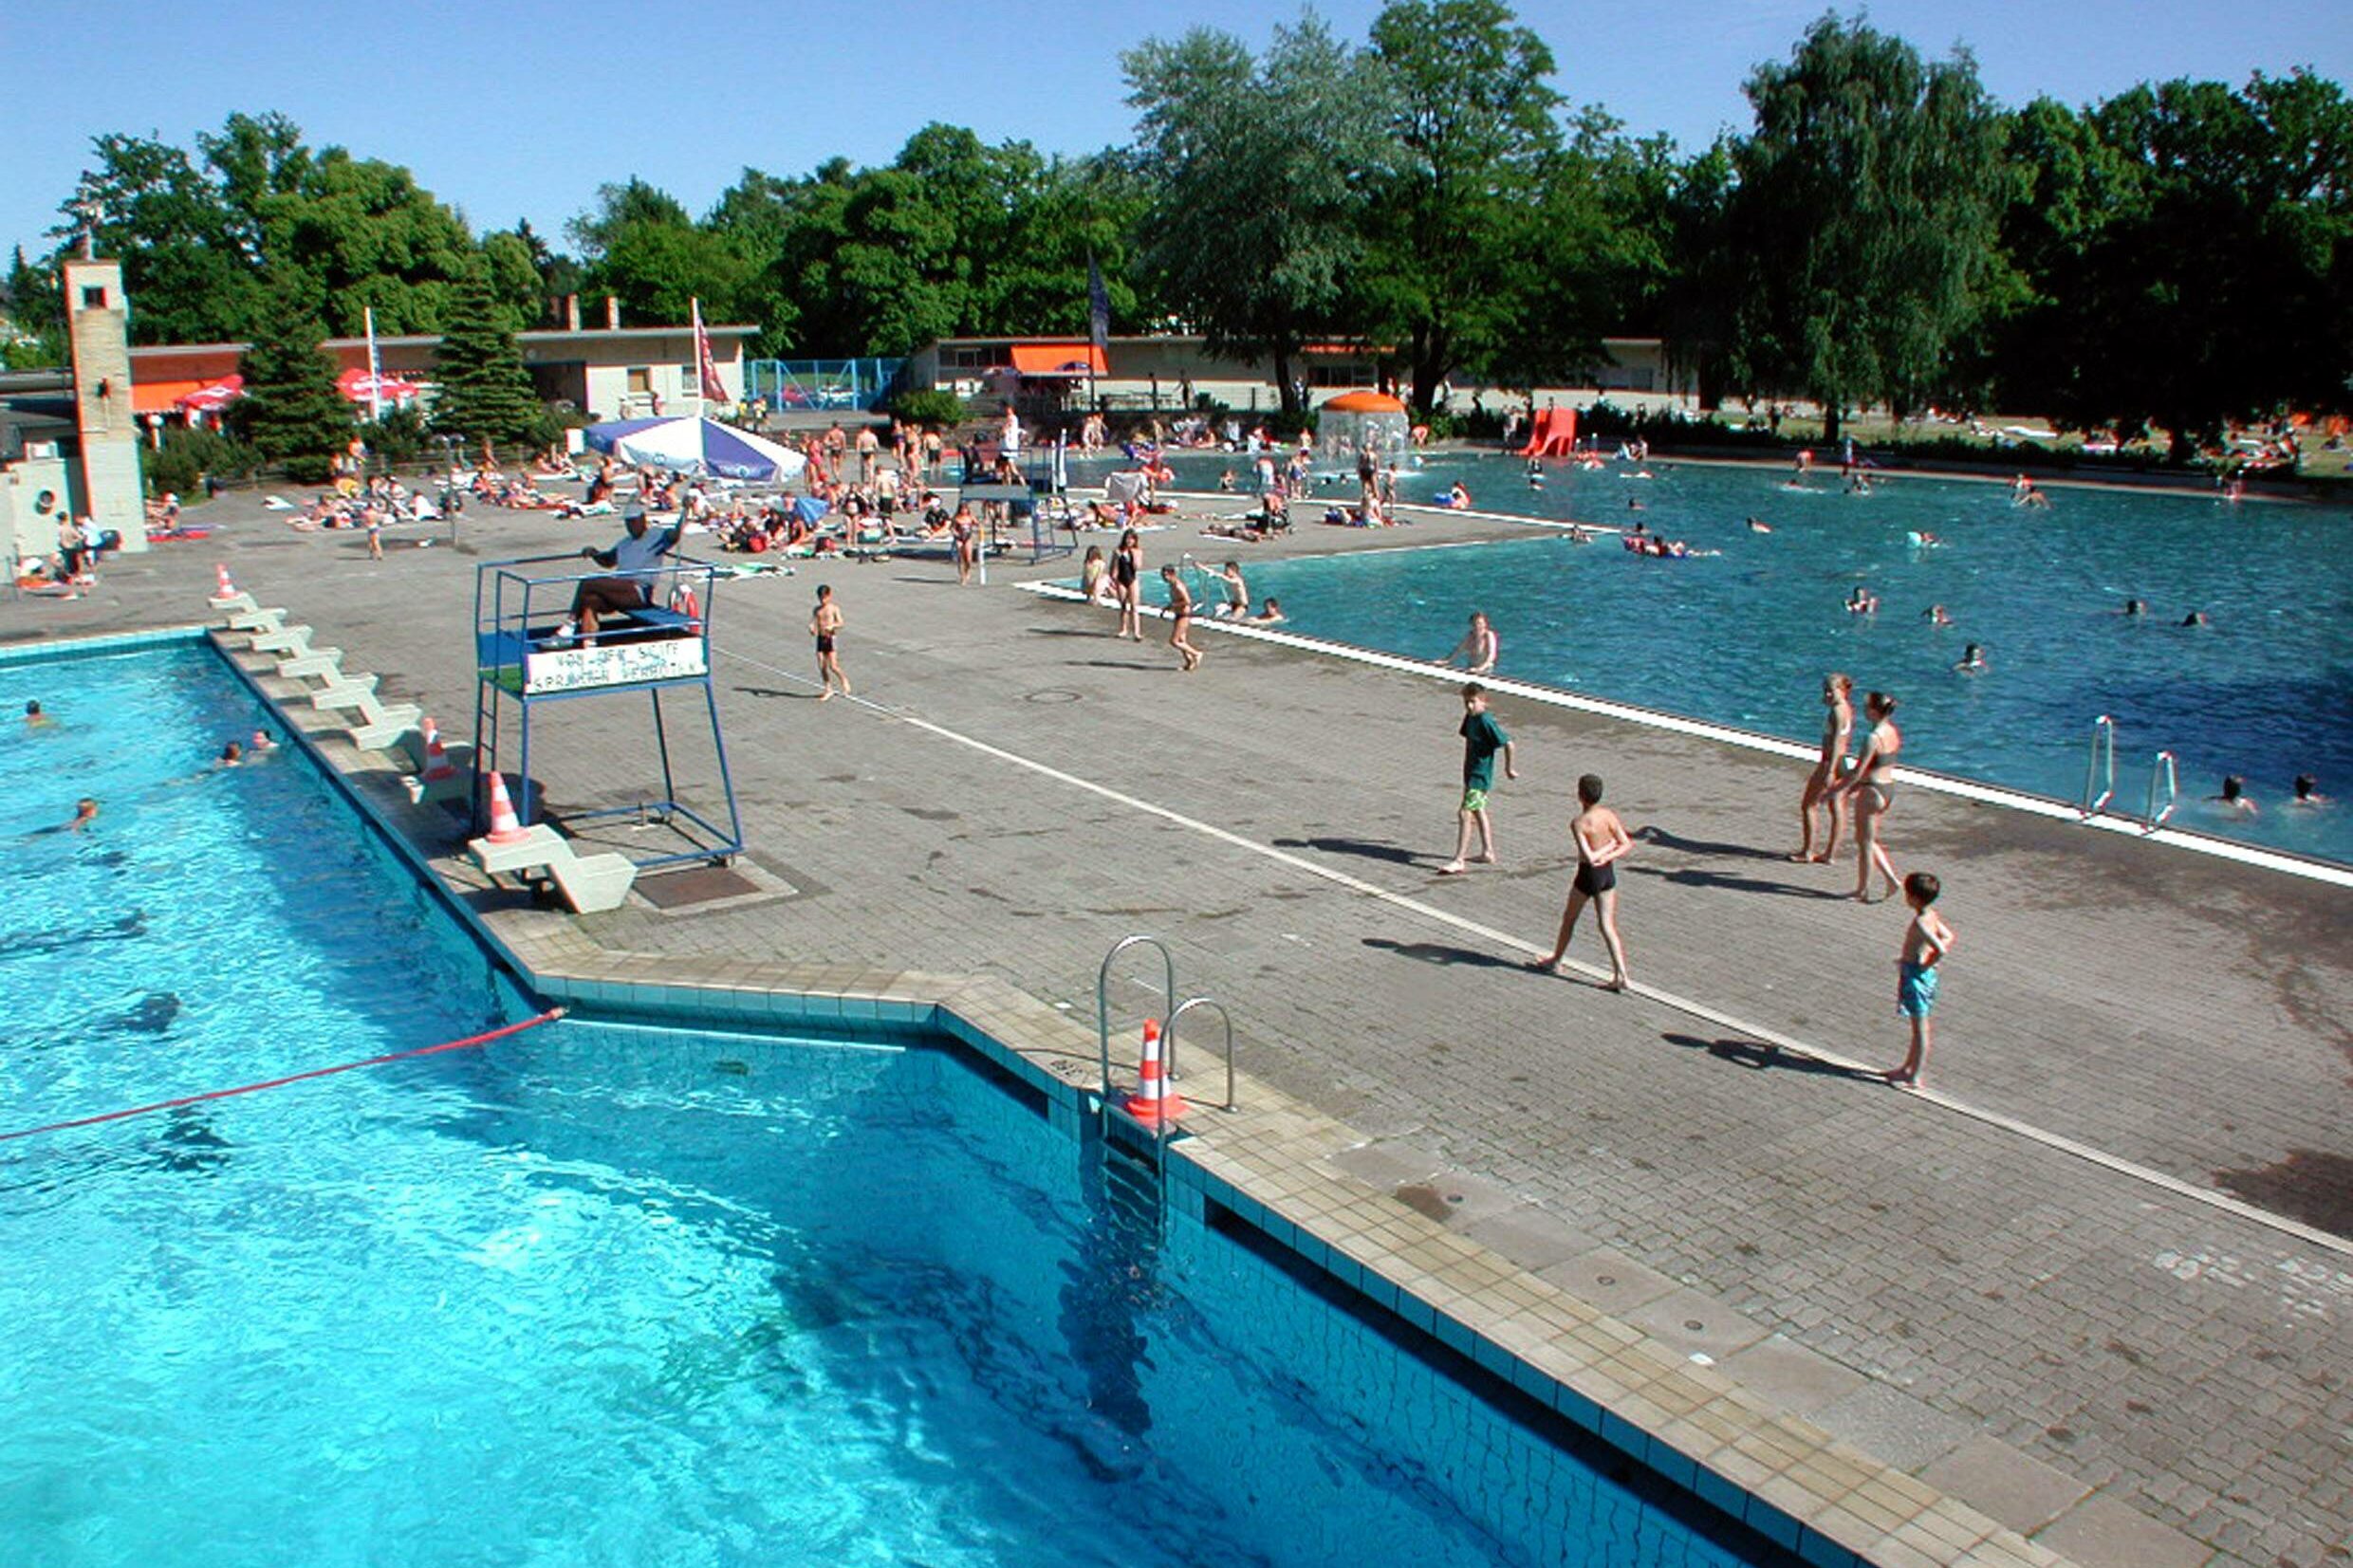 Das Sommerbad in Mariendorf - nicht zu verwechseln mit dem Kombibad in Mariendorf. Foto: Imago/Sven Lambert